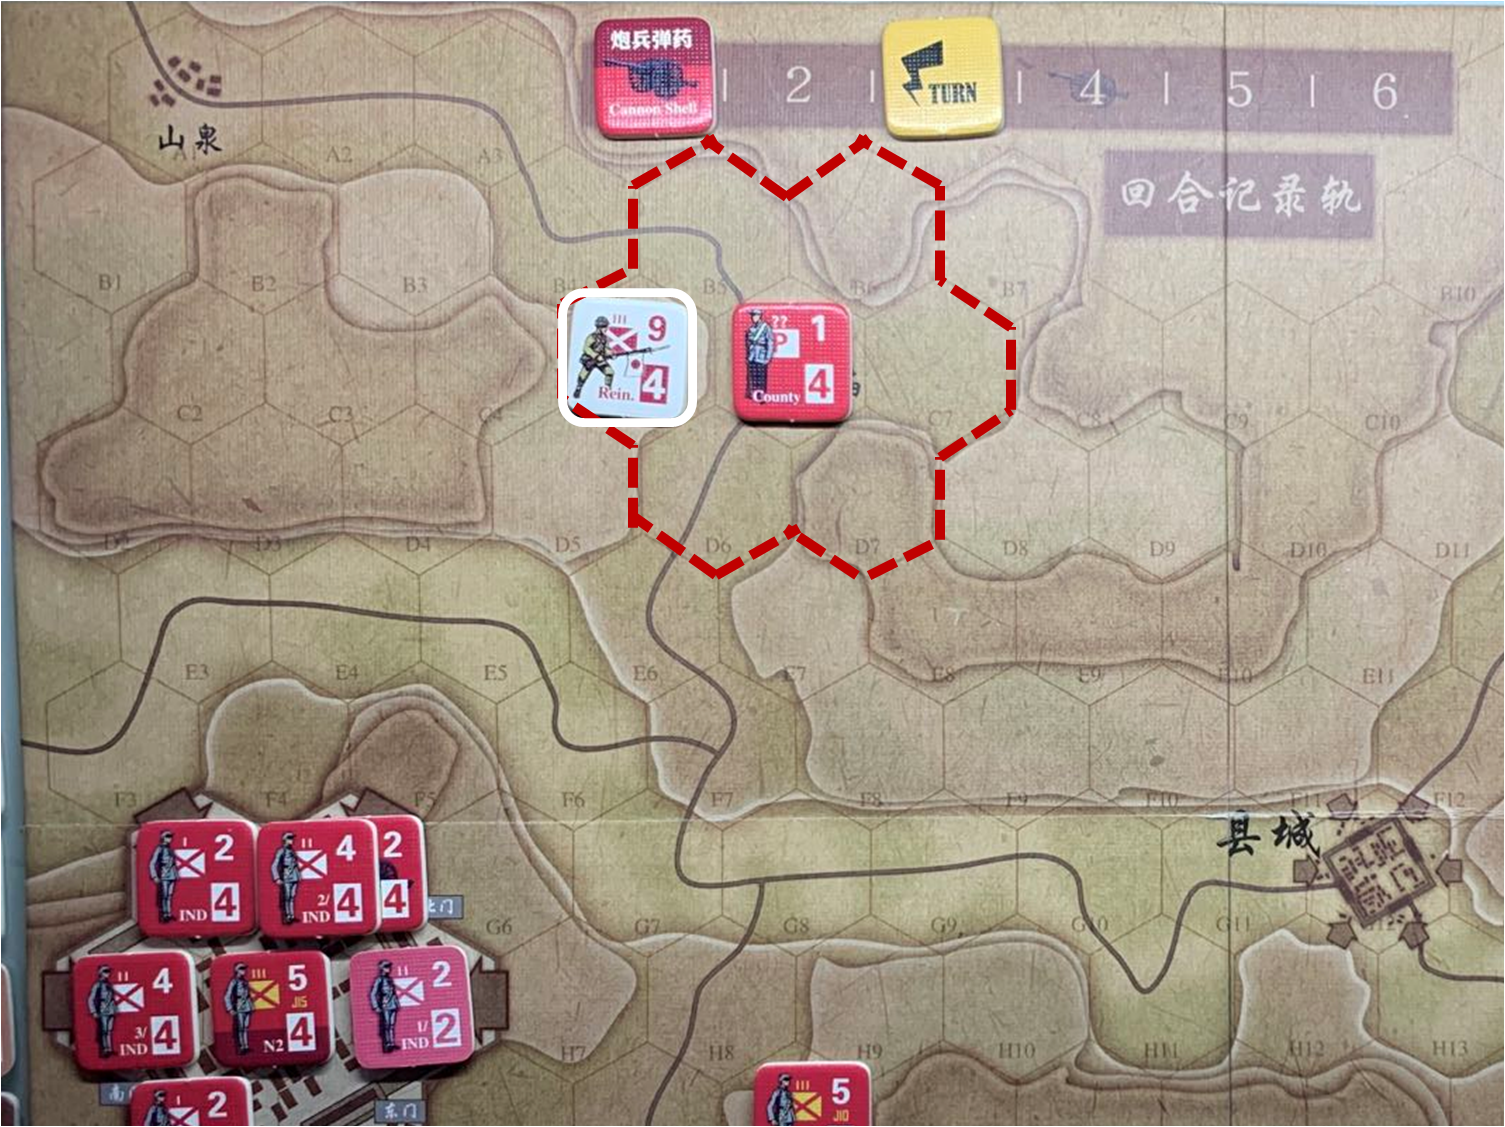 第三回合山泉方向日軍增援部隊（C5）對於移動命令1的執行計劃與結果，及附近共軍游擊隊控制區覆蓋範圍